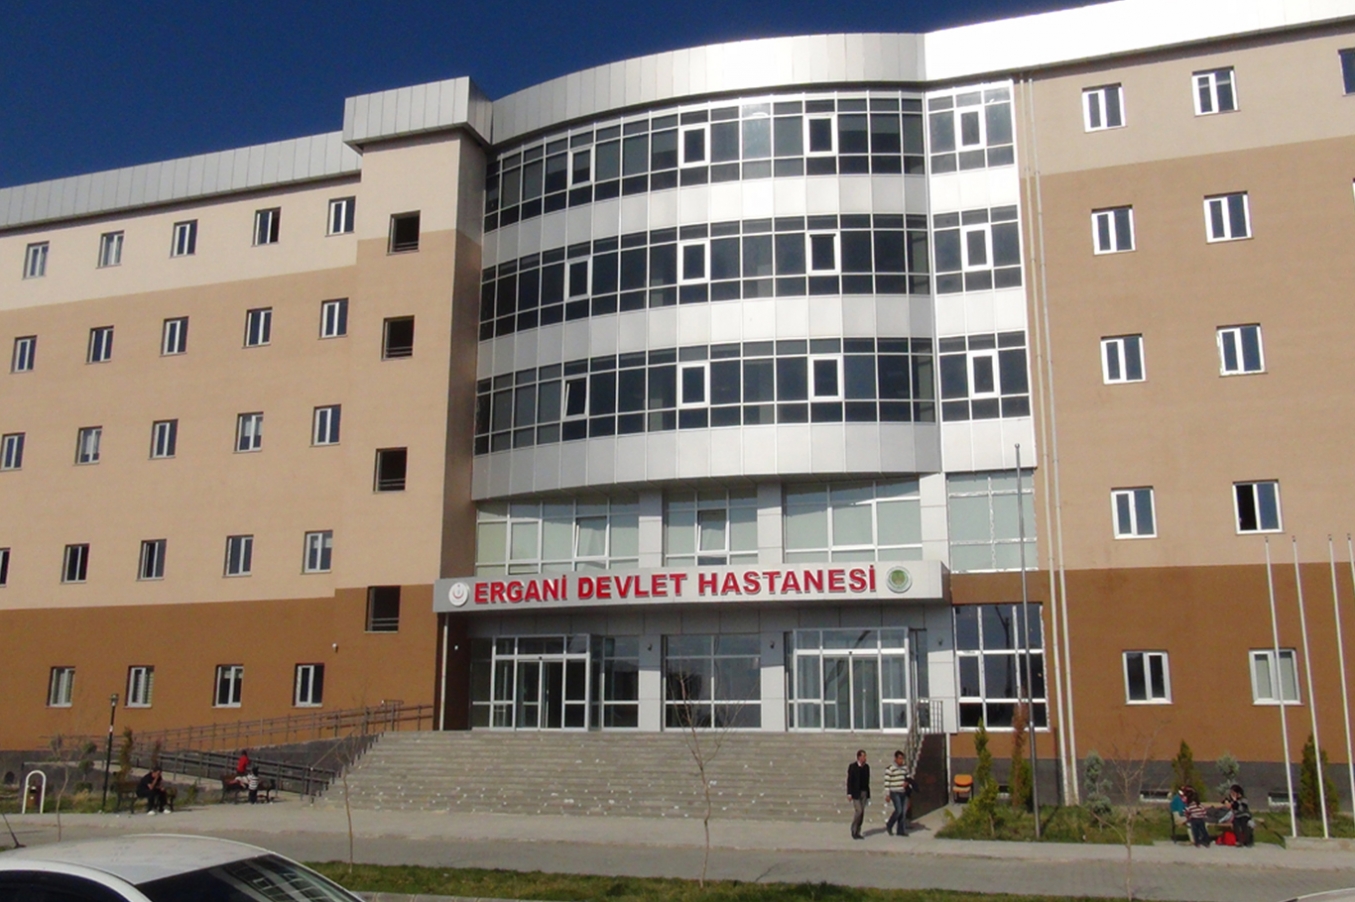 Diyarbakır İl Sağlık Müdürlüğü’nden ‘doktora güvenlik koridoru’ açıklaması:  Görüntüler yeni değil!